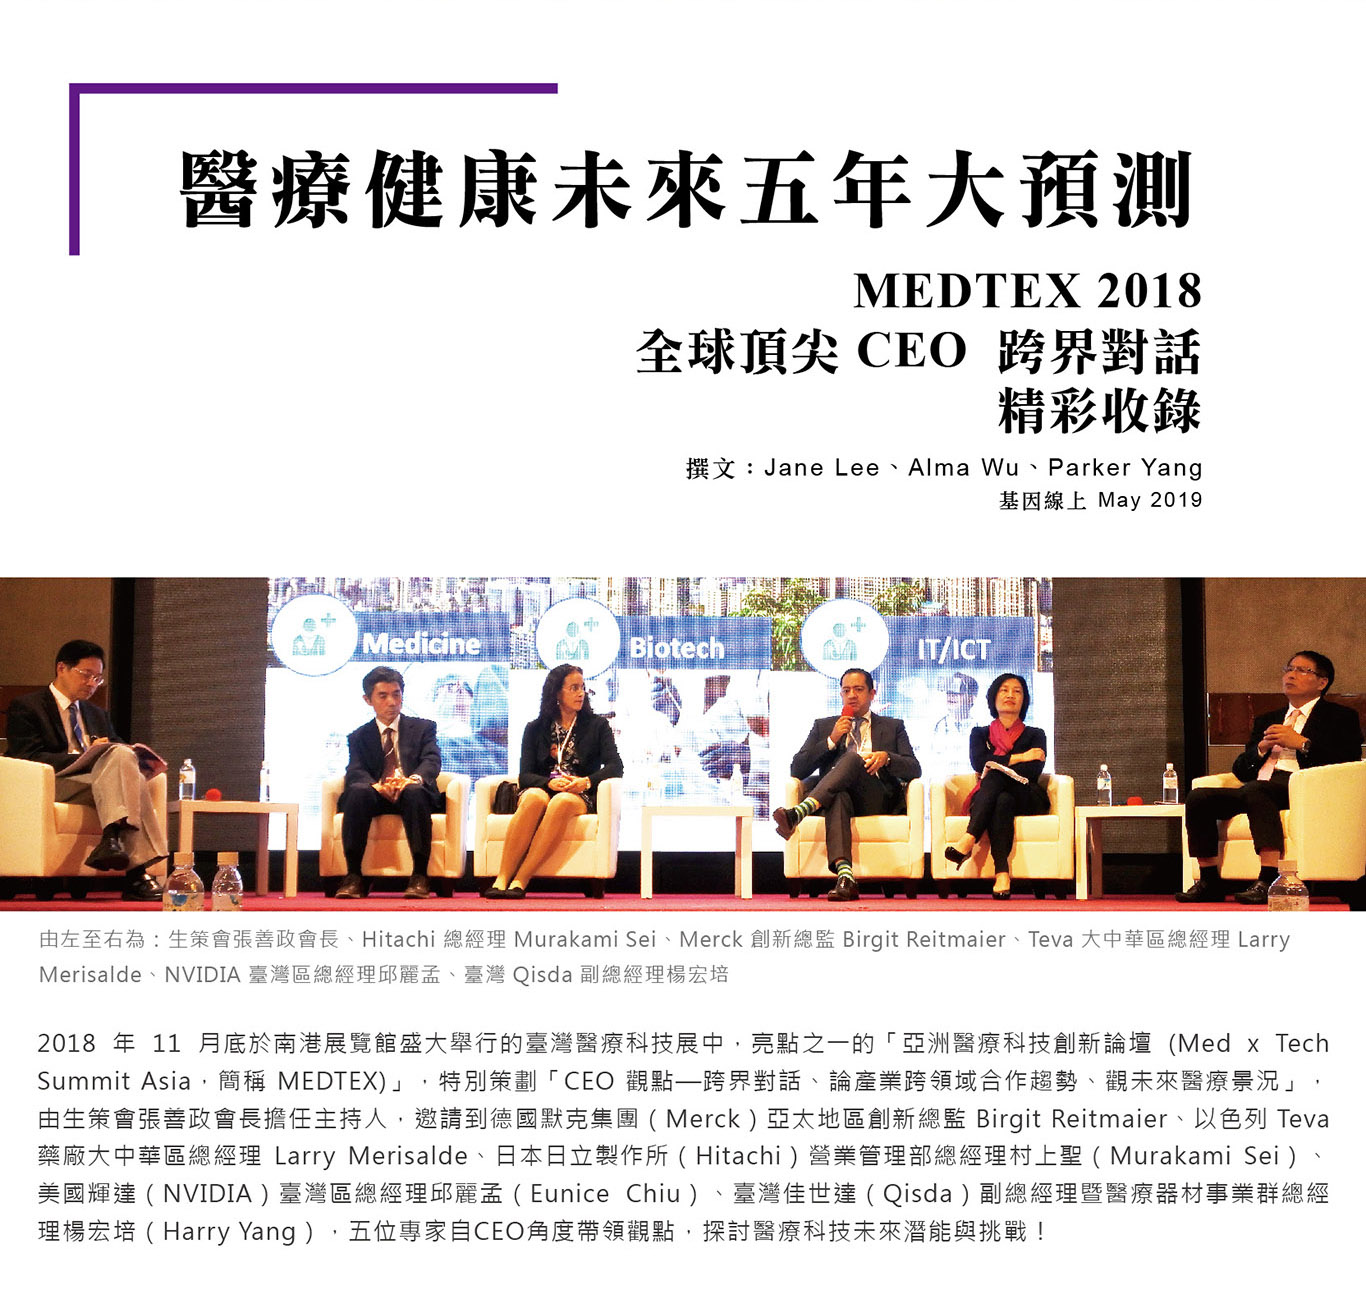 2018 年 11 月底於南港展覽館盛大舉行的臺灣醫療科技展中，亮點之一的「亞洲醫療科技創新論壇 (Med x Tech Summit Asia，簡稱 MEDTEX)」，特別策劃「CEO 觀點—跨界對話、論產業跨領域合作趨勢、觀未來醫療景況」，由生策會張善政會長擔任主持人，邀請到德國默克集團（Merck）亞太地區創新總監 Birgit Reitmaier、以色列 Teva 藥廠大中華區總經理 Larry Merisalde、日本日立製作所（Hitachi）營業管理部總經理村上聖（Murakami Sei）、美國輝達（NVIDIA）臺灣區總經理邱麗孟（Eunice Chiu）、臺灣佳世達（Qisda）副總經理暨醫療器材事業群總經理楊宏培（Harry Yang），五位專家自CEO角度帶領觀點，探討醫療科技未來潛能與挑戰！